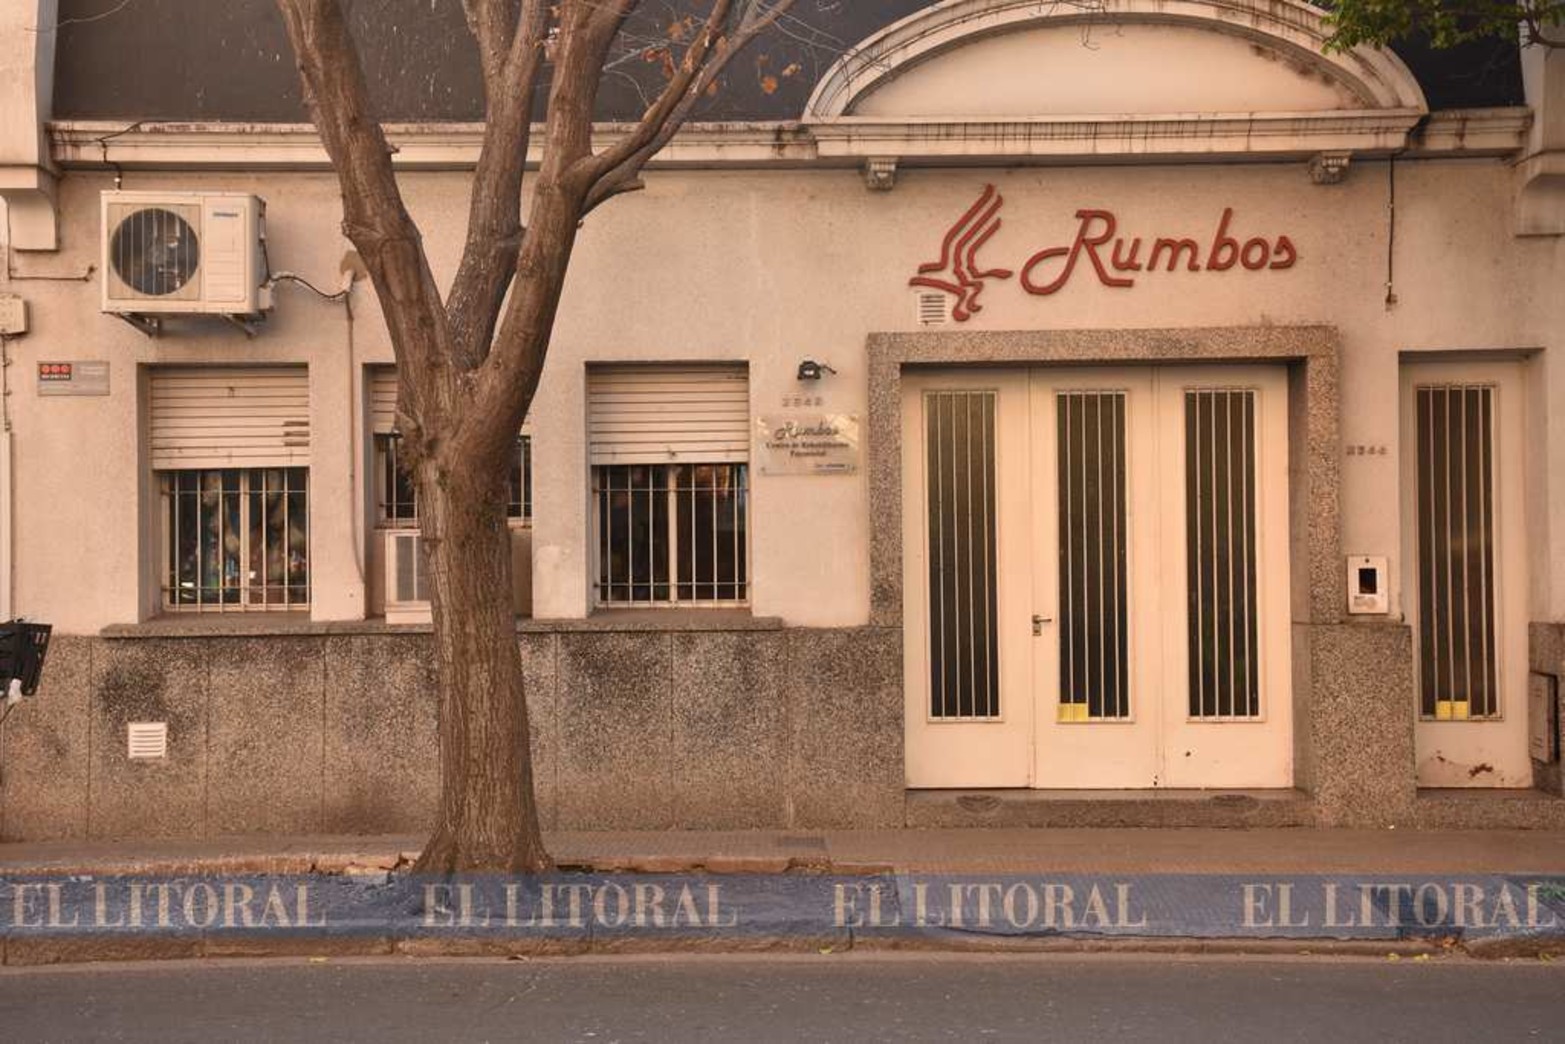 La fachada de la sede que está ubicada en el microncentro en calle Suipcaha 2646.